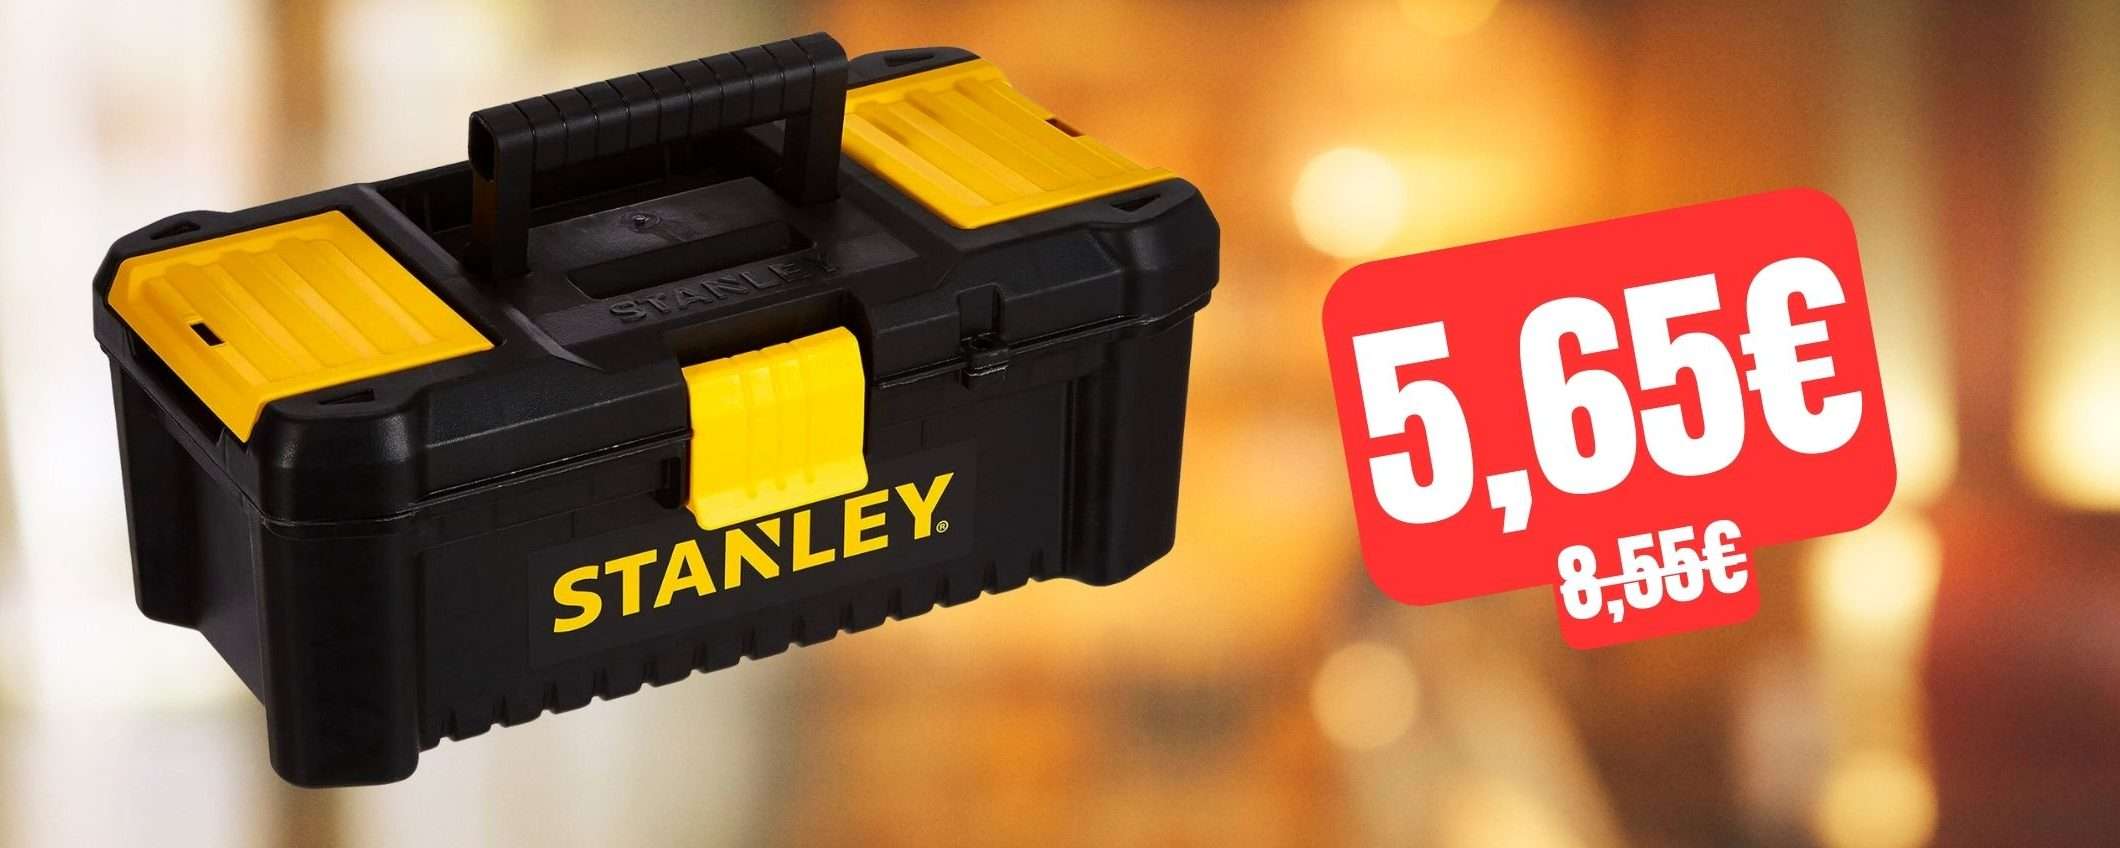 Cassetta porta utensili Stanley: un AFFARE su Amazon a soli 5,65€